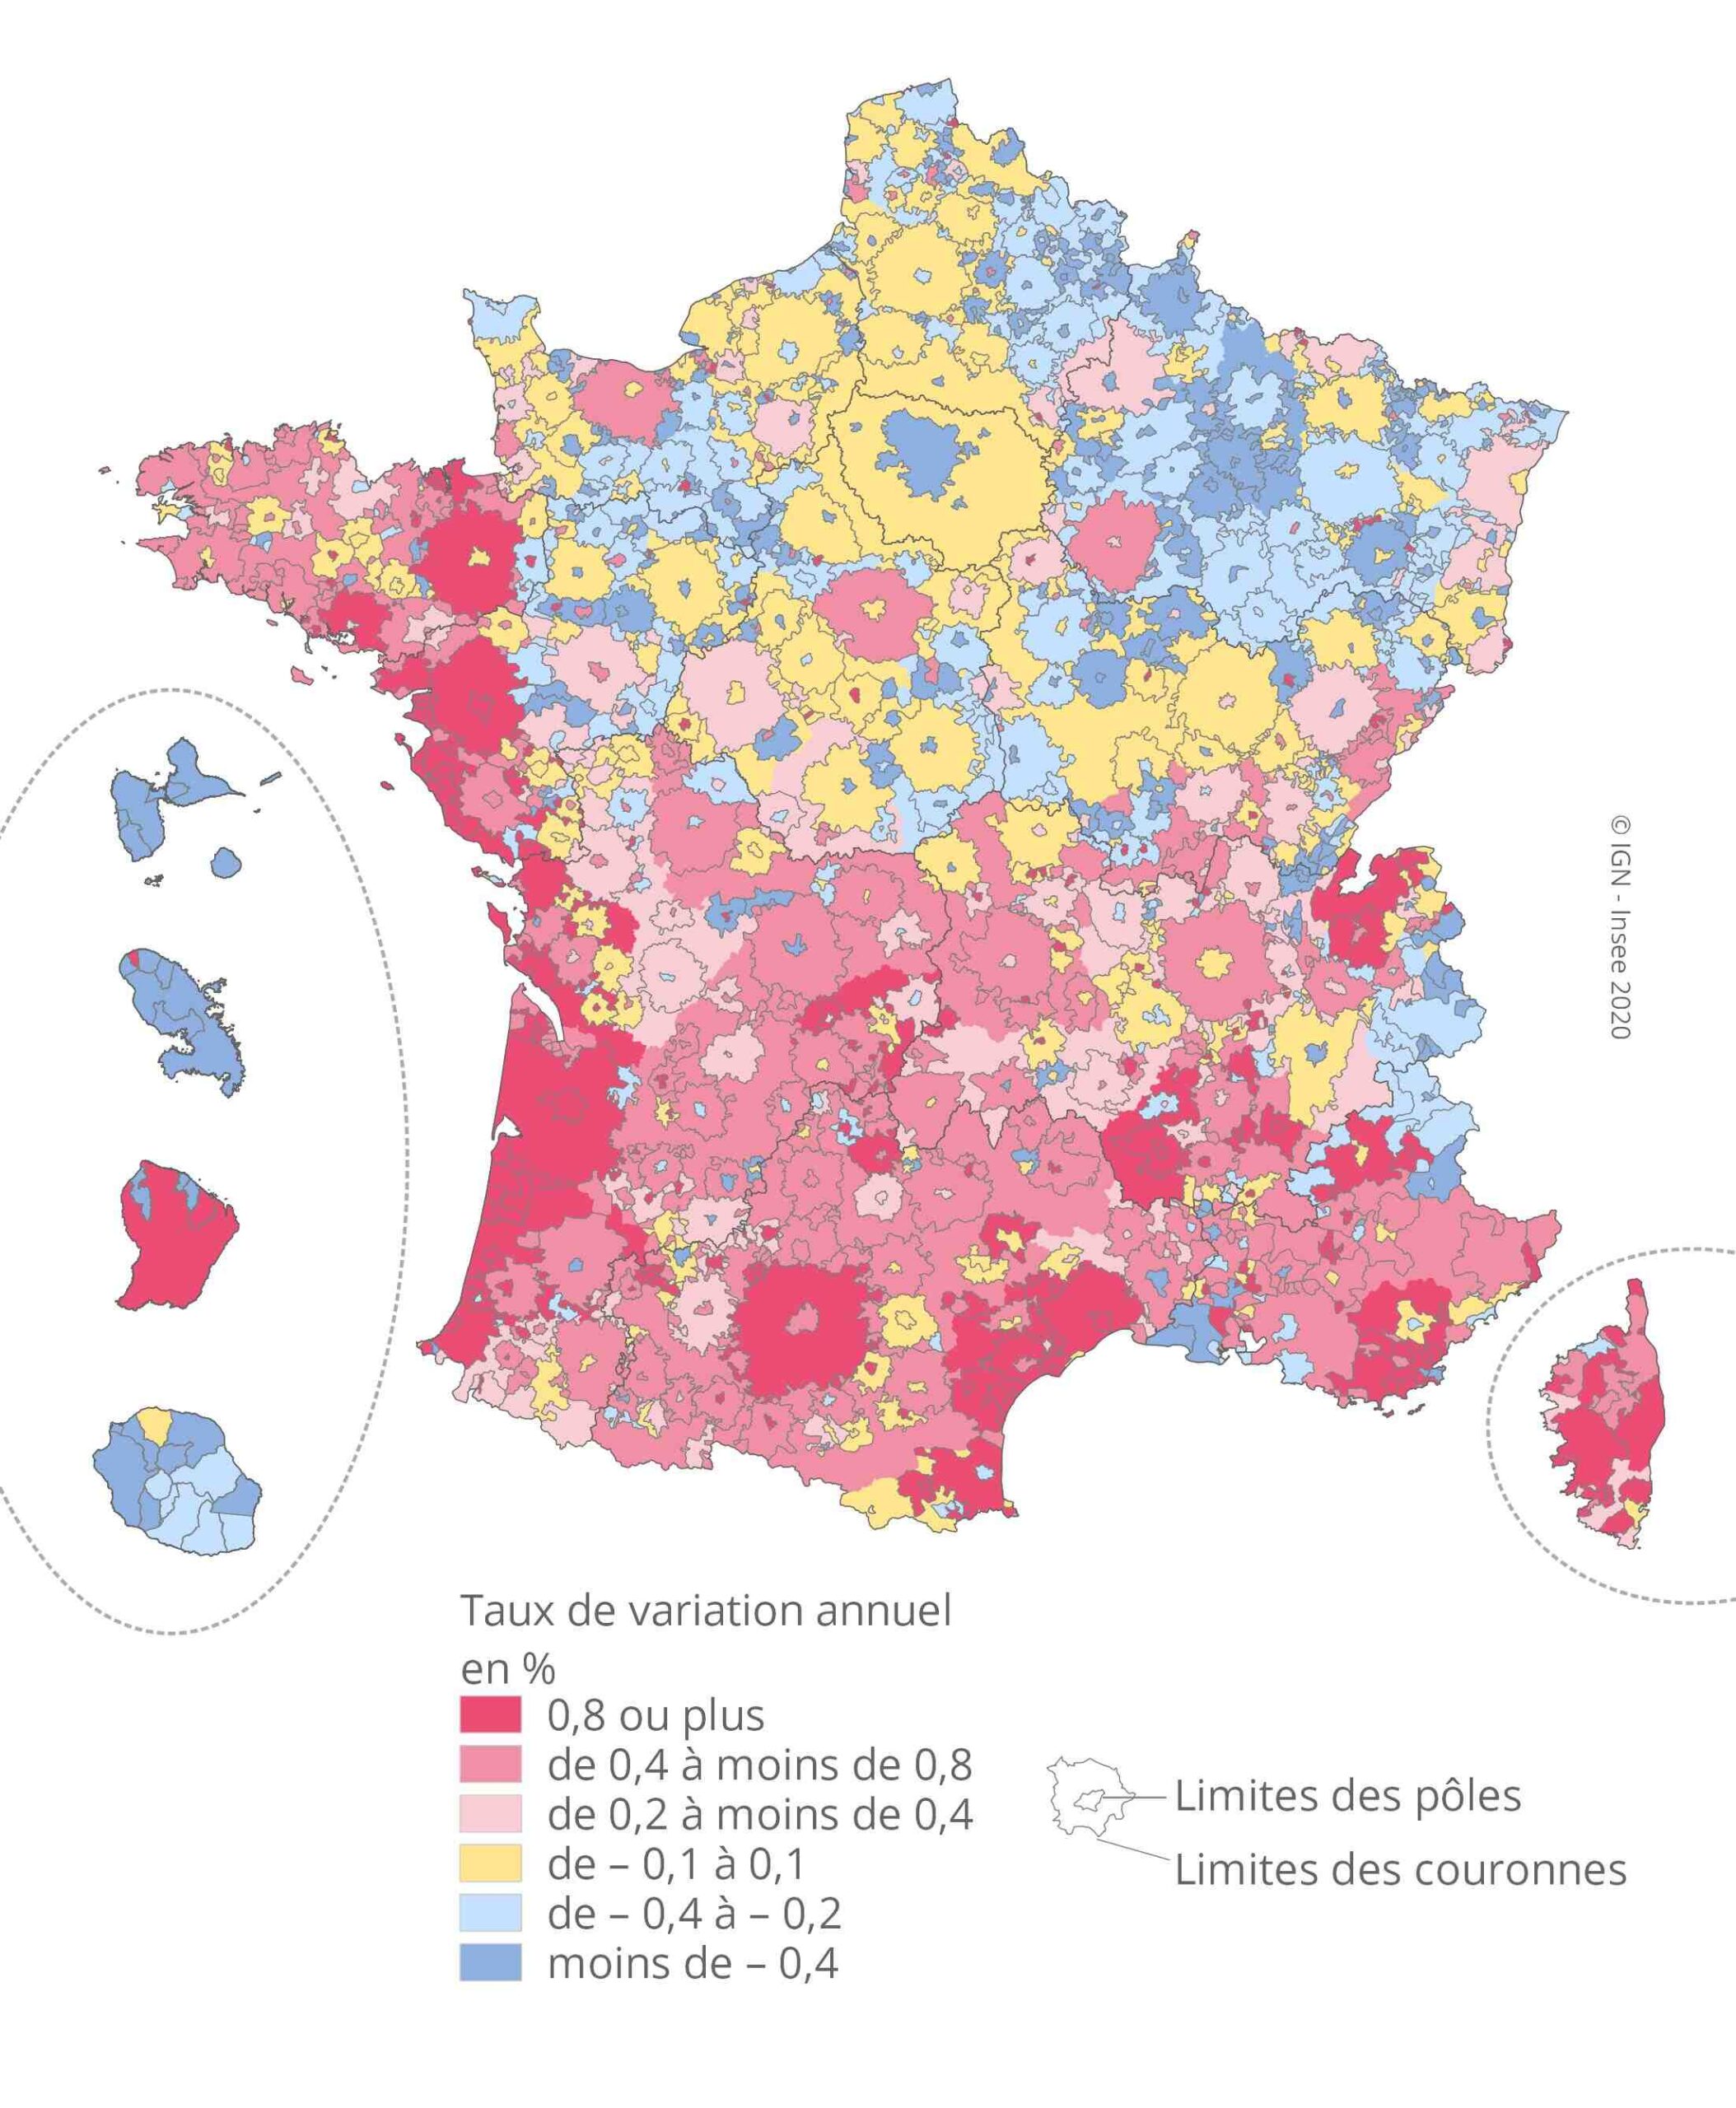 Comment les territoires français sont-ils répartis?